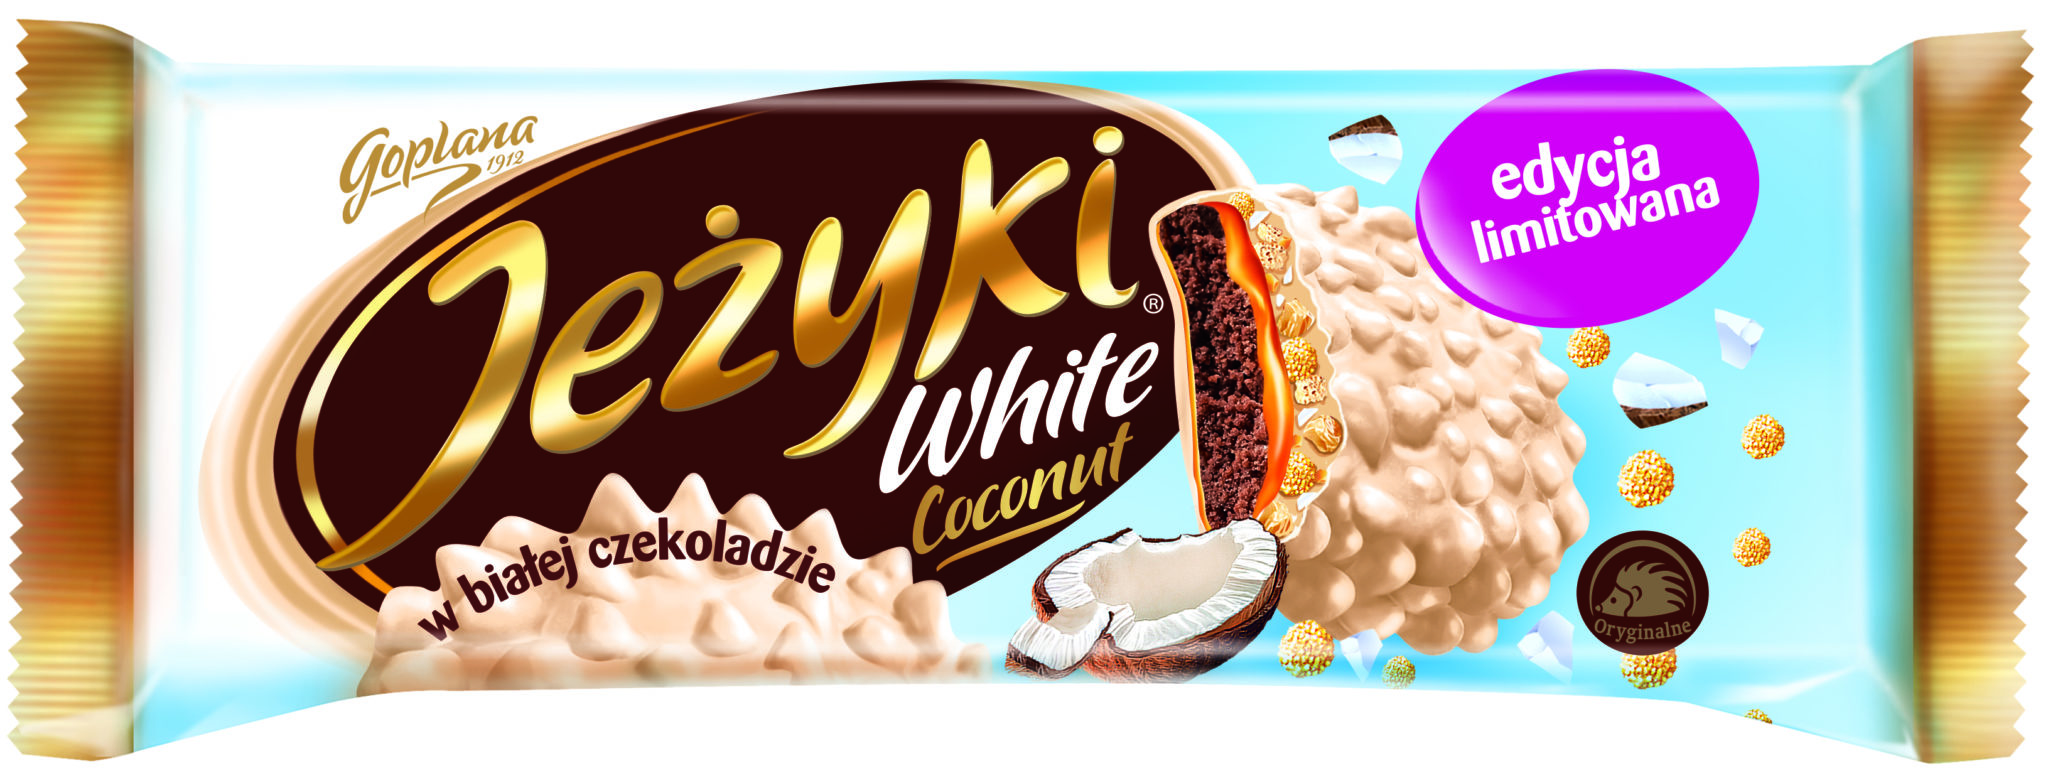 Oferta limitowana: Jeżyki kokosowe w białej czekoladzie